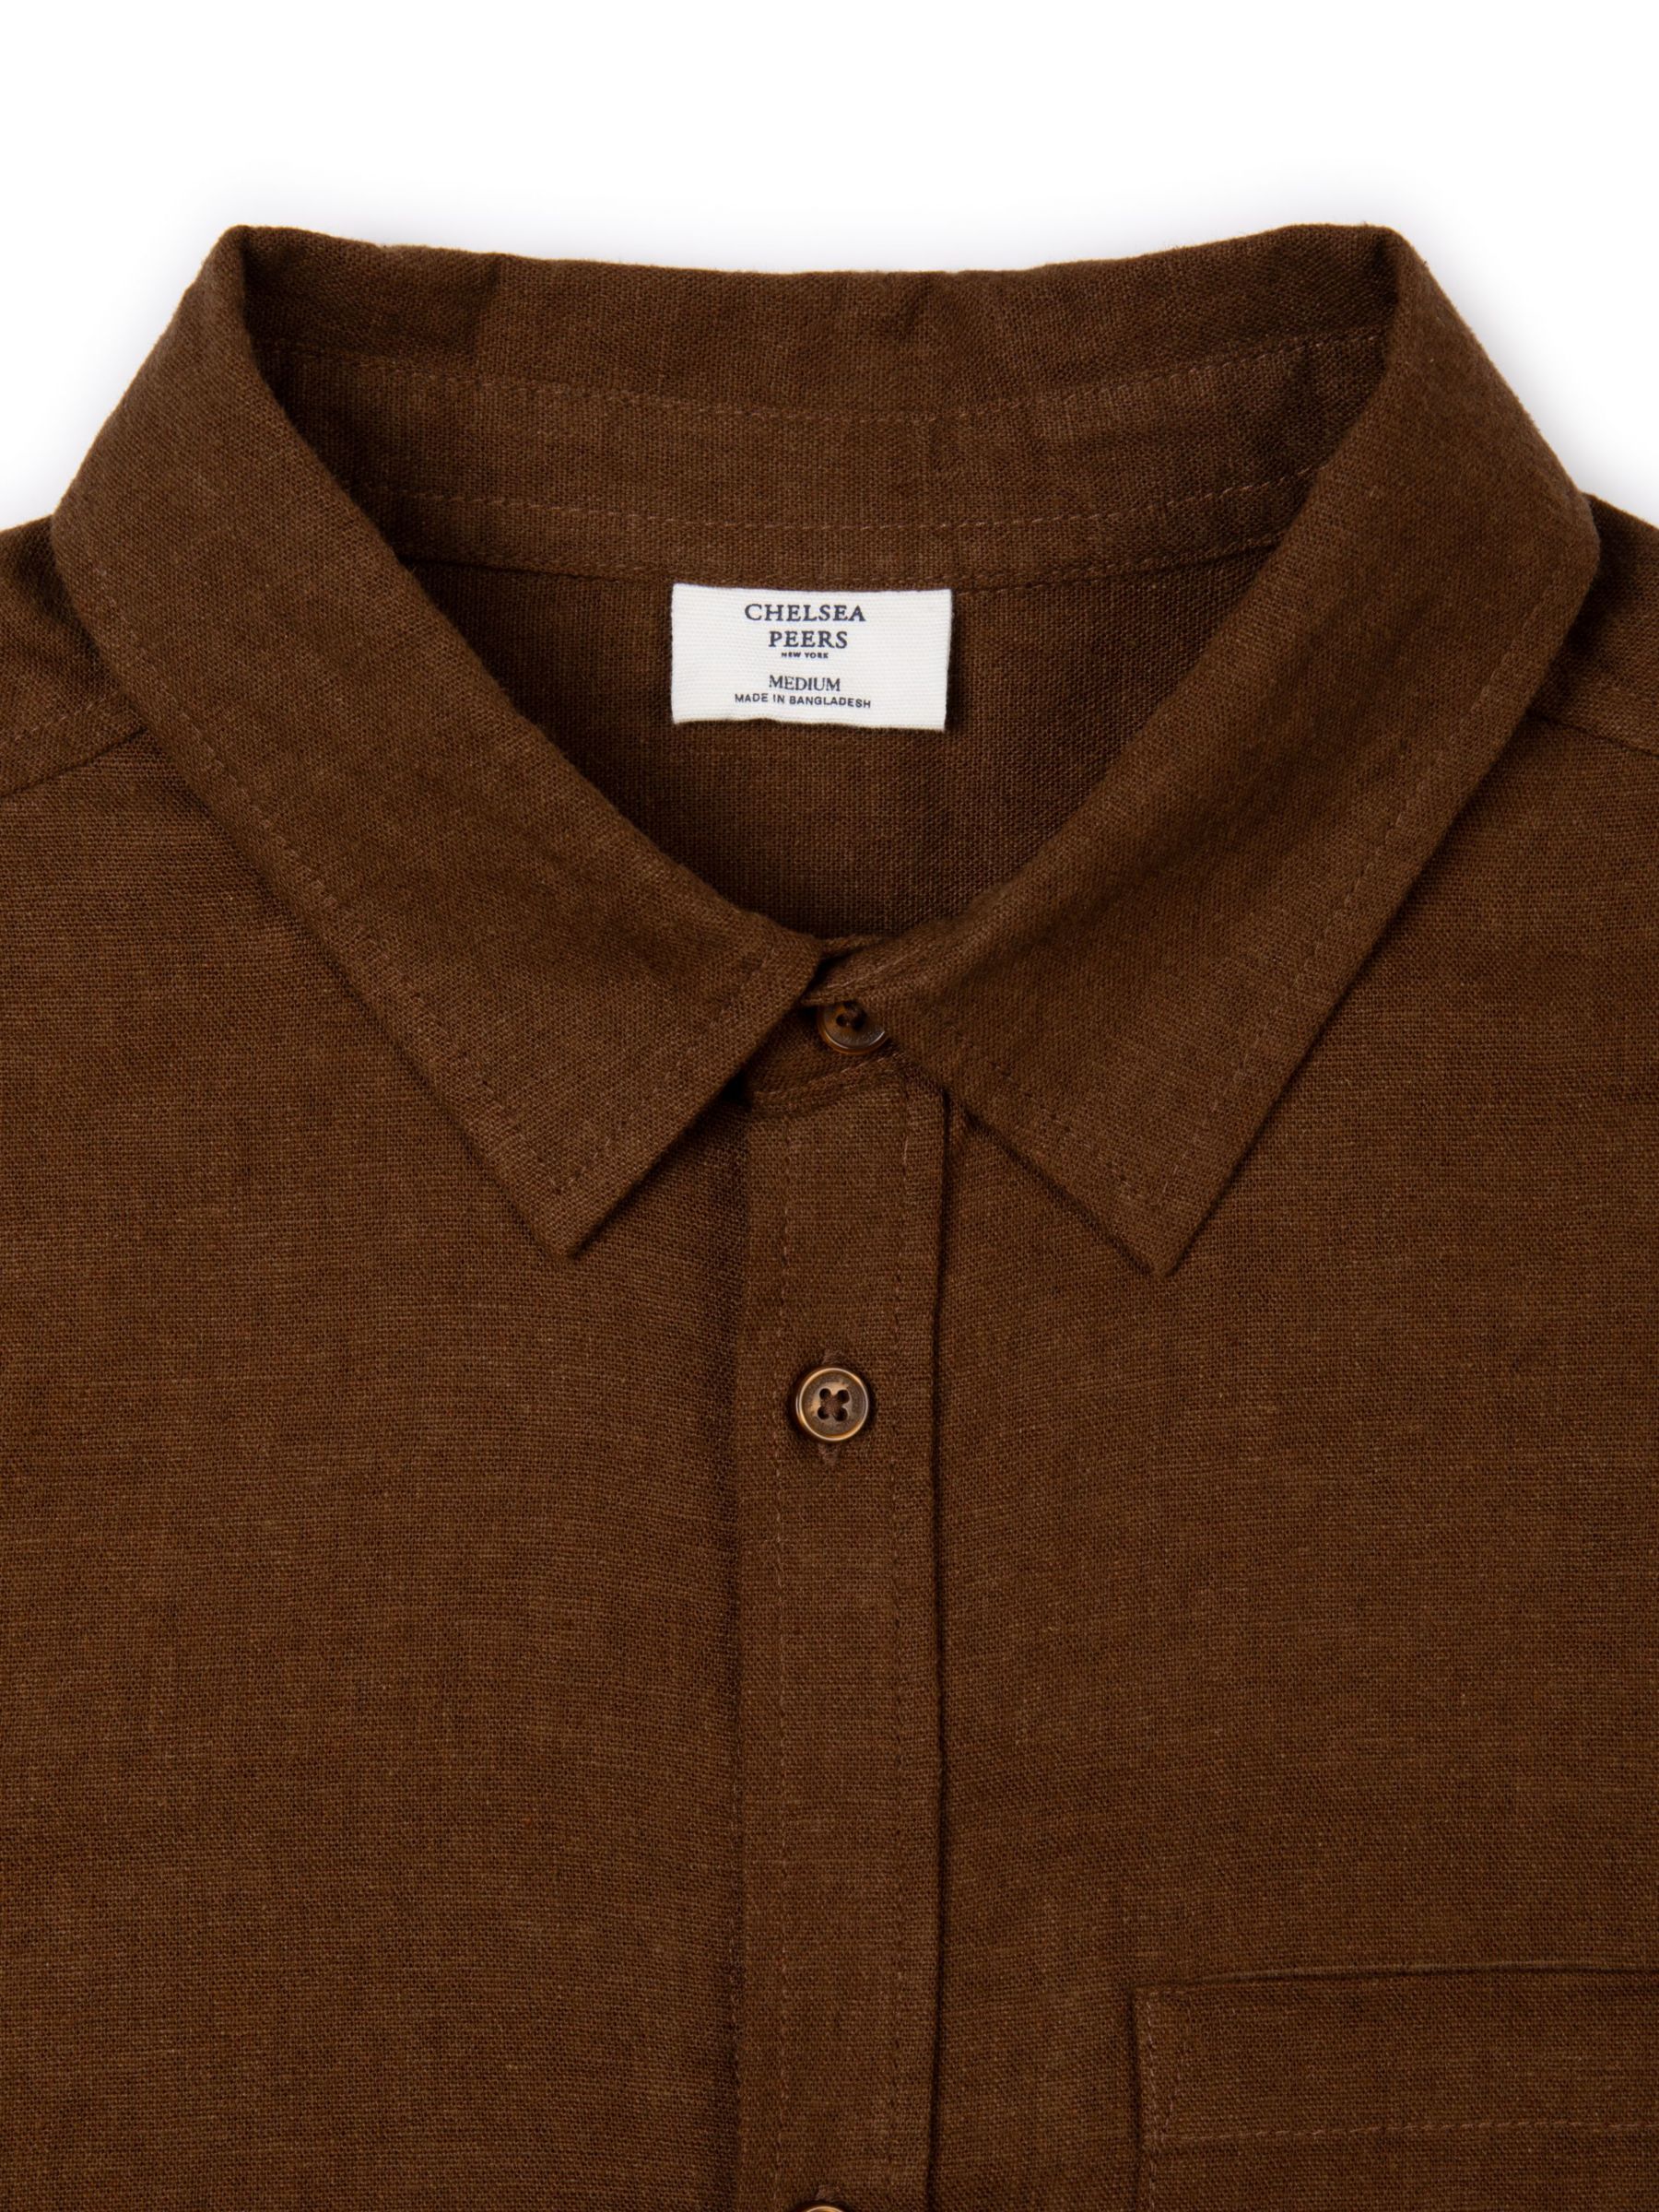 Chelsea Peers Linen Blend Long Sleeve Shirt, Brown, S